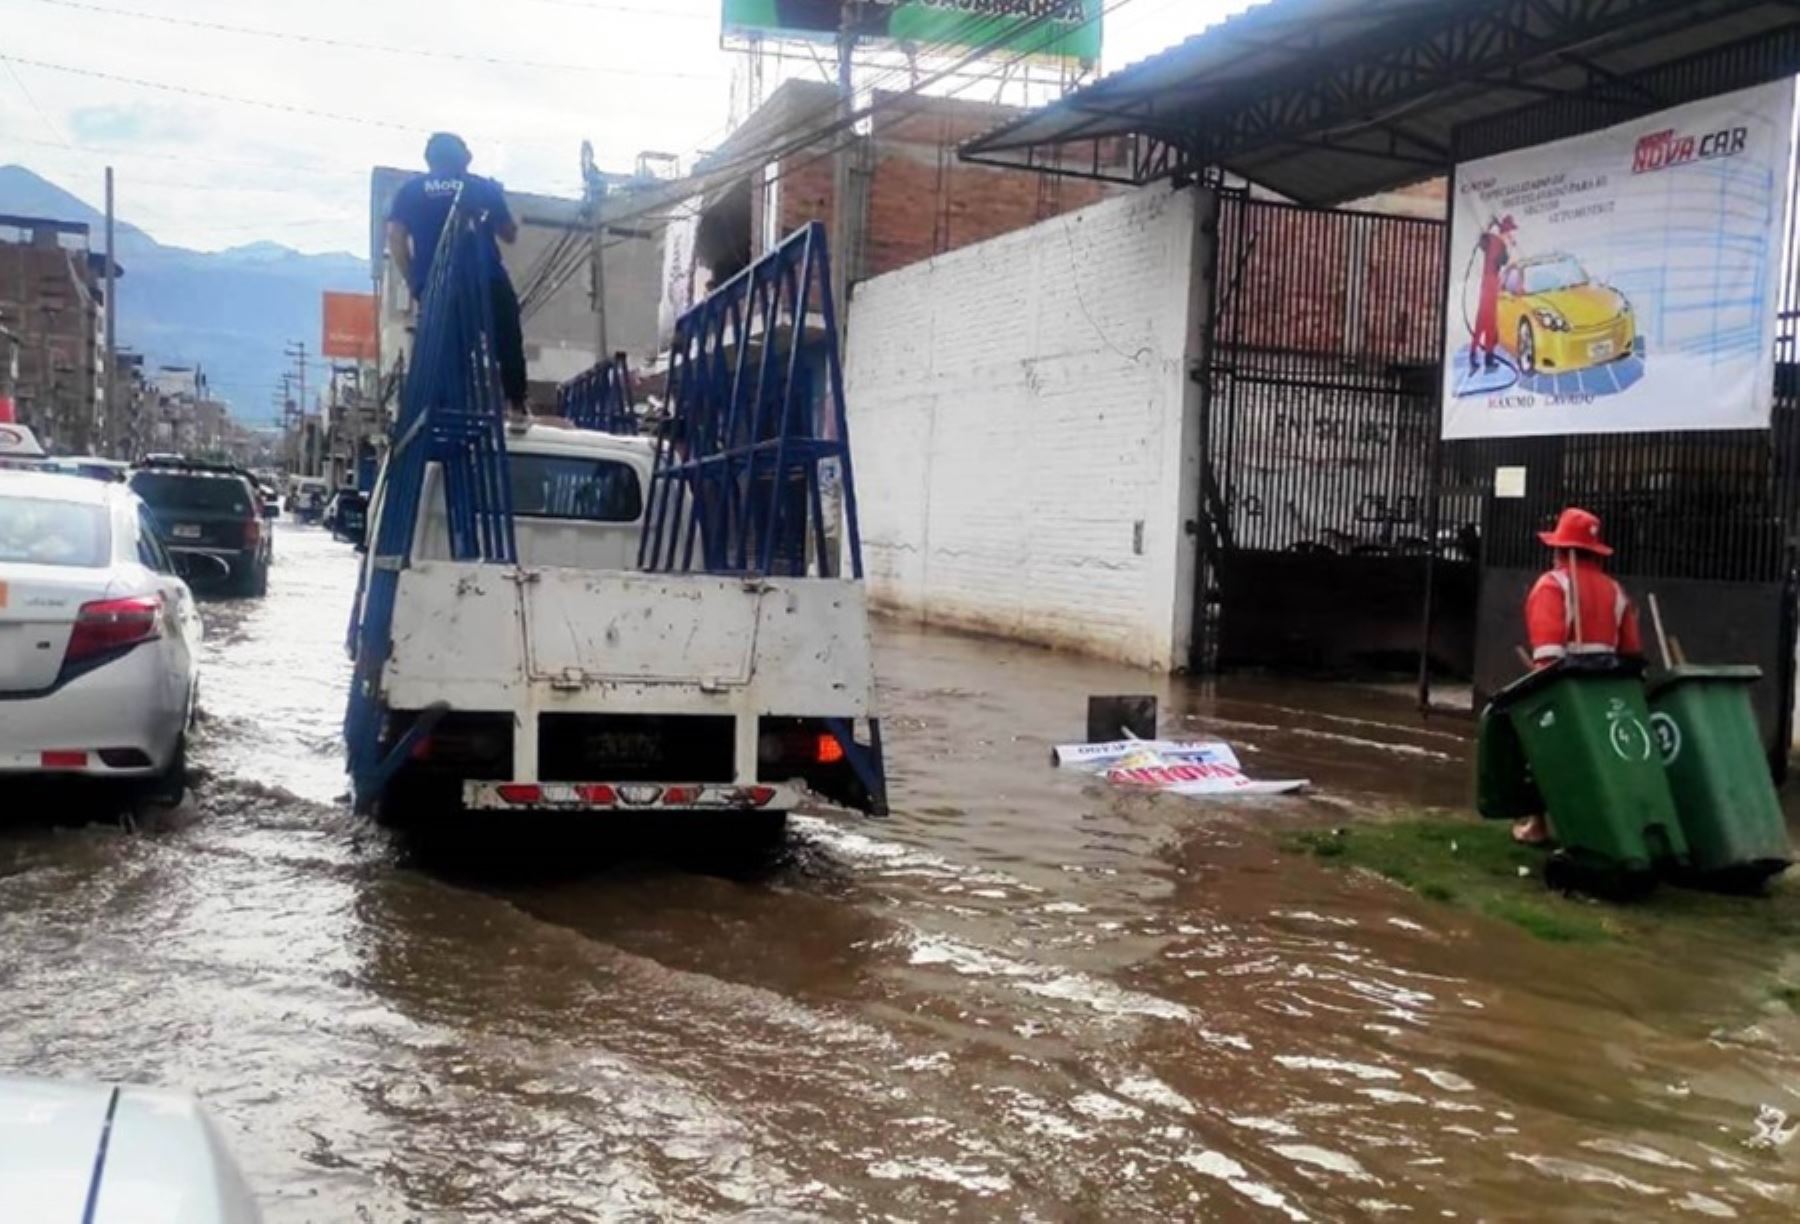 Fuertes lluvias se registraron en la víspera en la región Cajamarca, siendo las provincias de San Miguel y Cajamarca con mayor acumulación de precipitación con 66 y 33 milímetros, respectivamente, informó la oficina regional del Servicio Nacional de Meteorología e Hidrología (Senamhi).